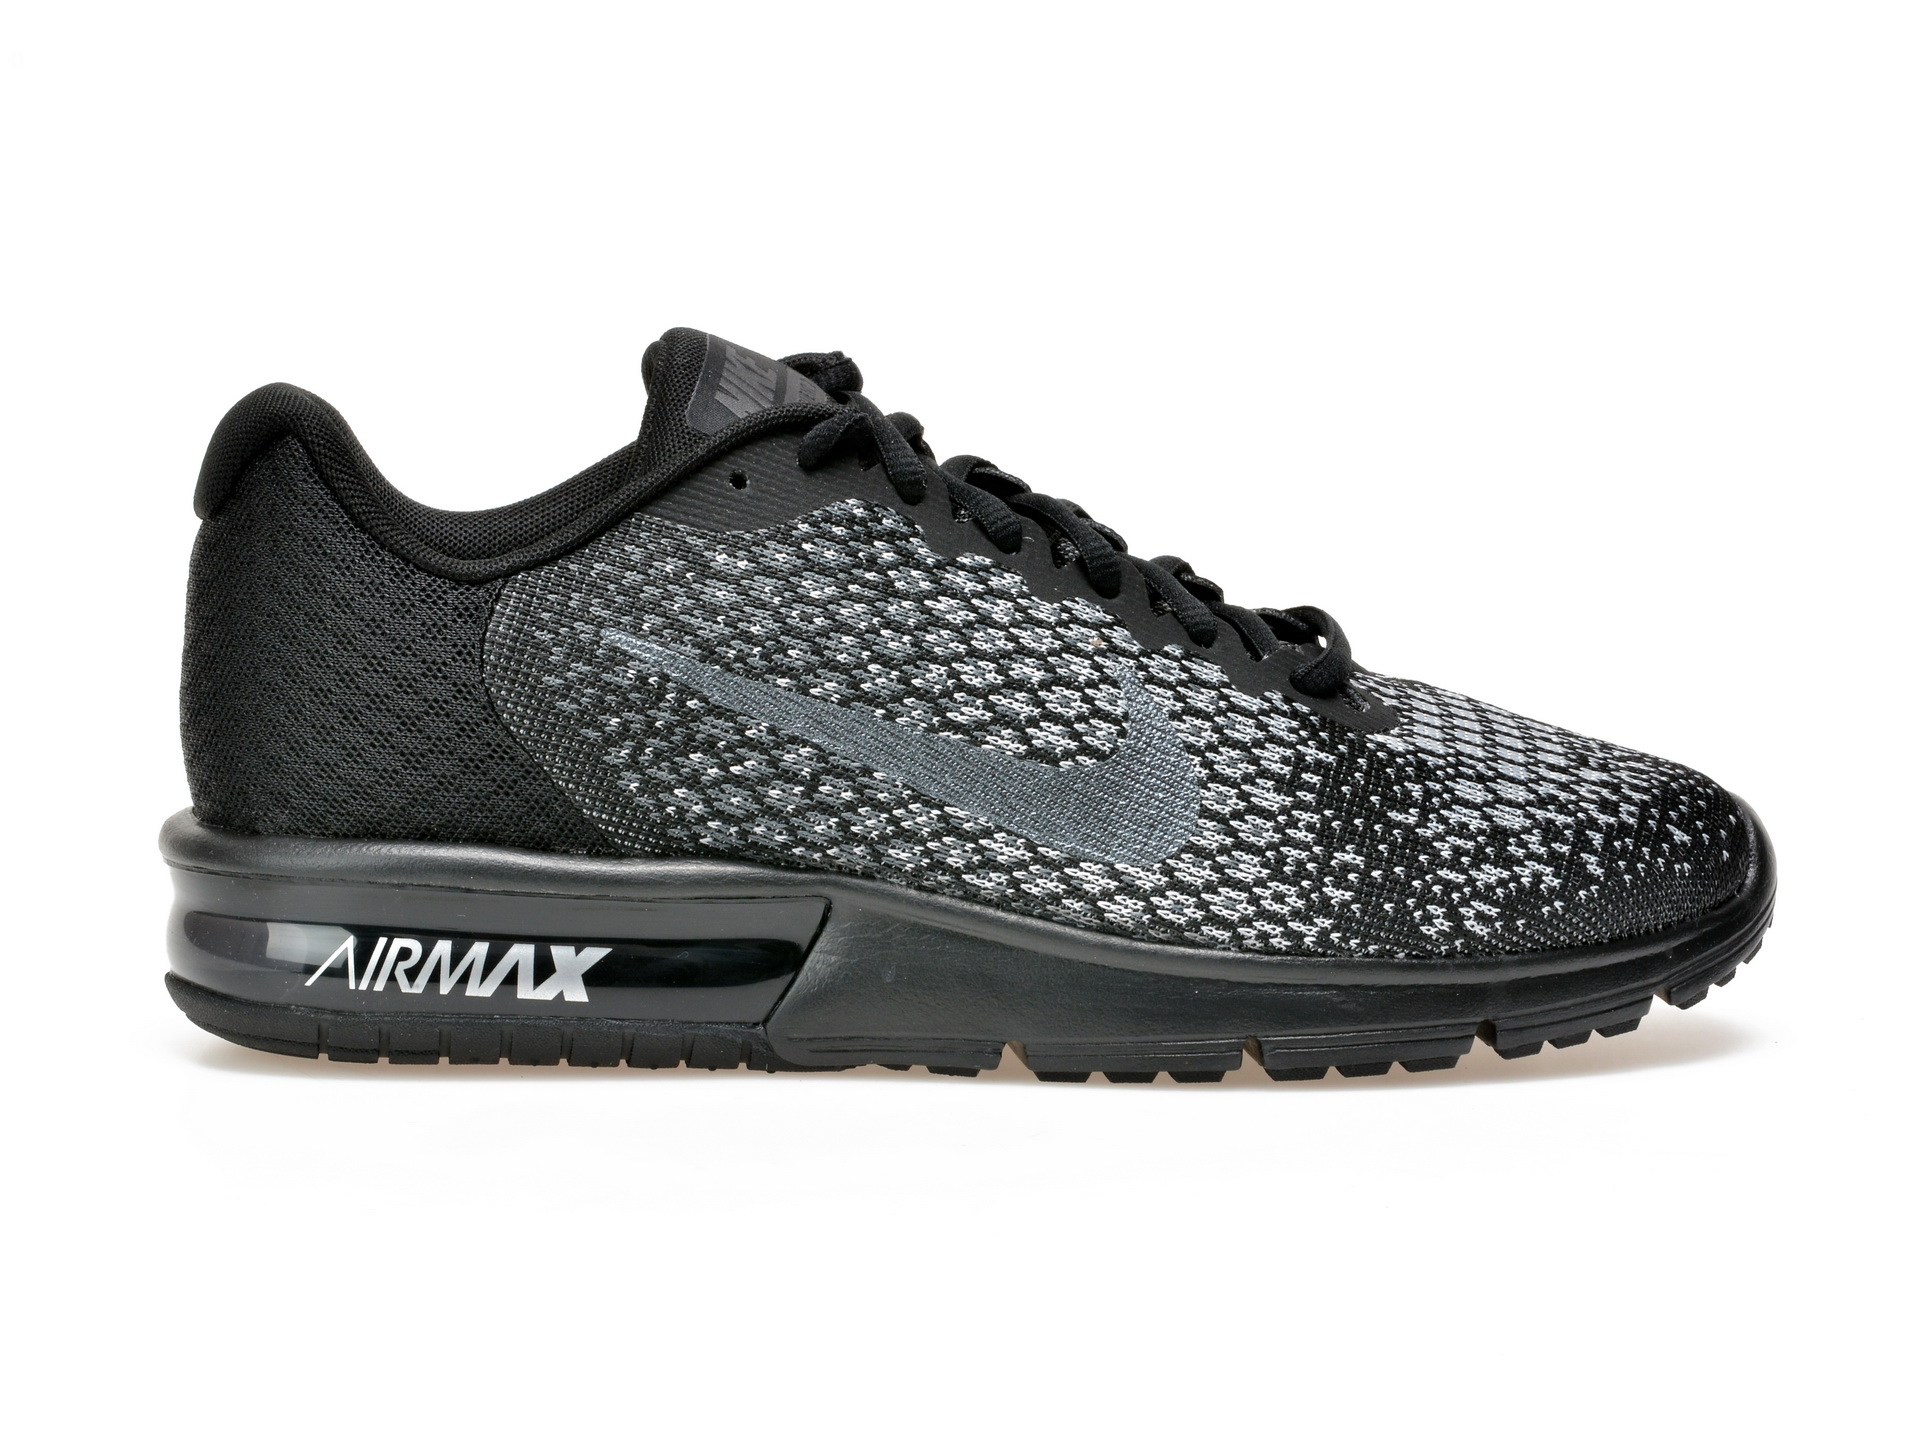 Pantofi sport NIKE AIR MAX SEQUENT 2 negri, 852461, din material textil